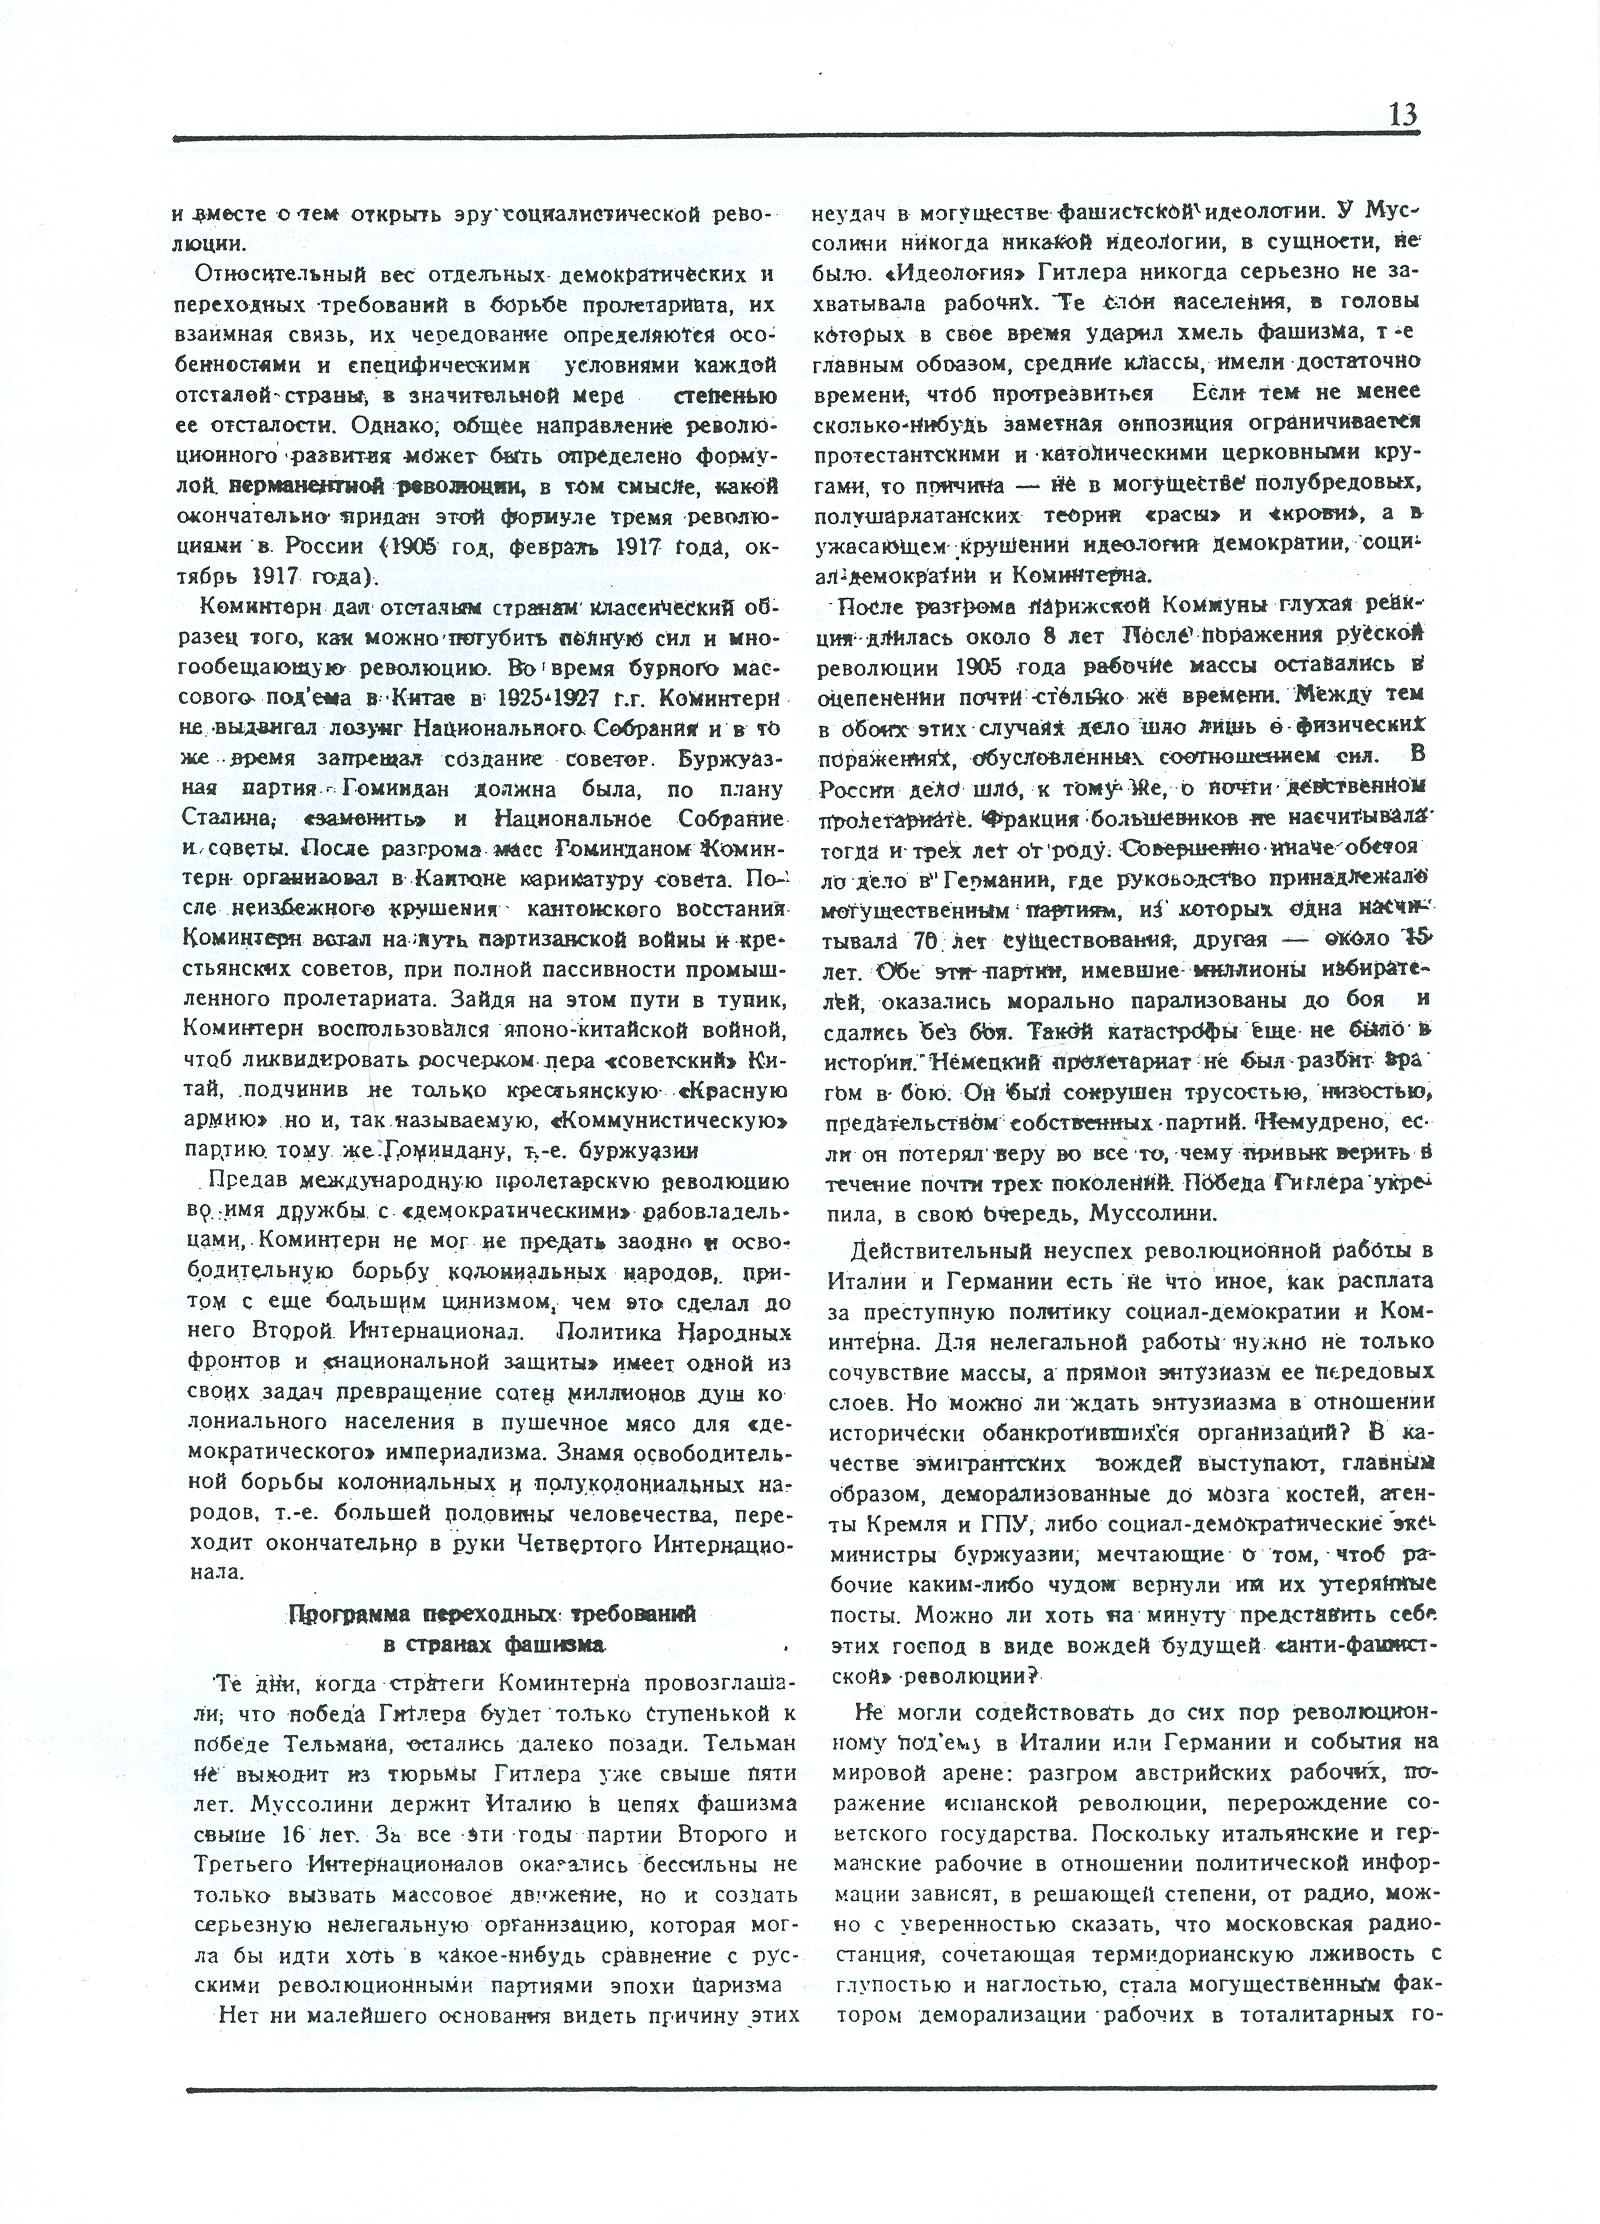 Dagli archivi del bolscevismo n. 1 (marzo 1986) - pag. 13